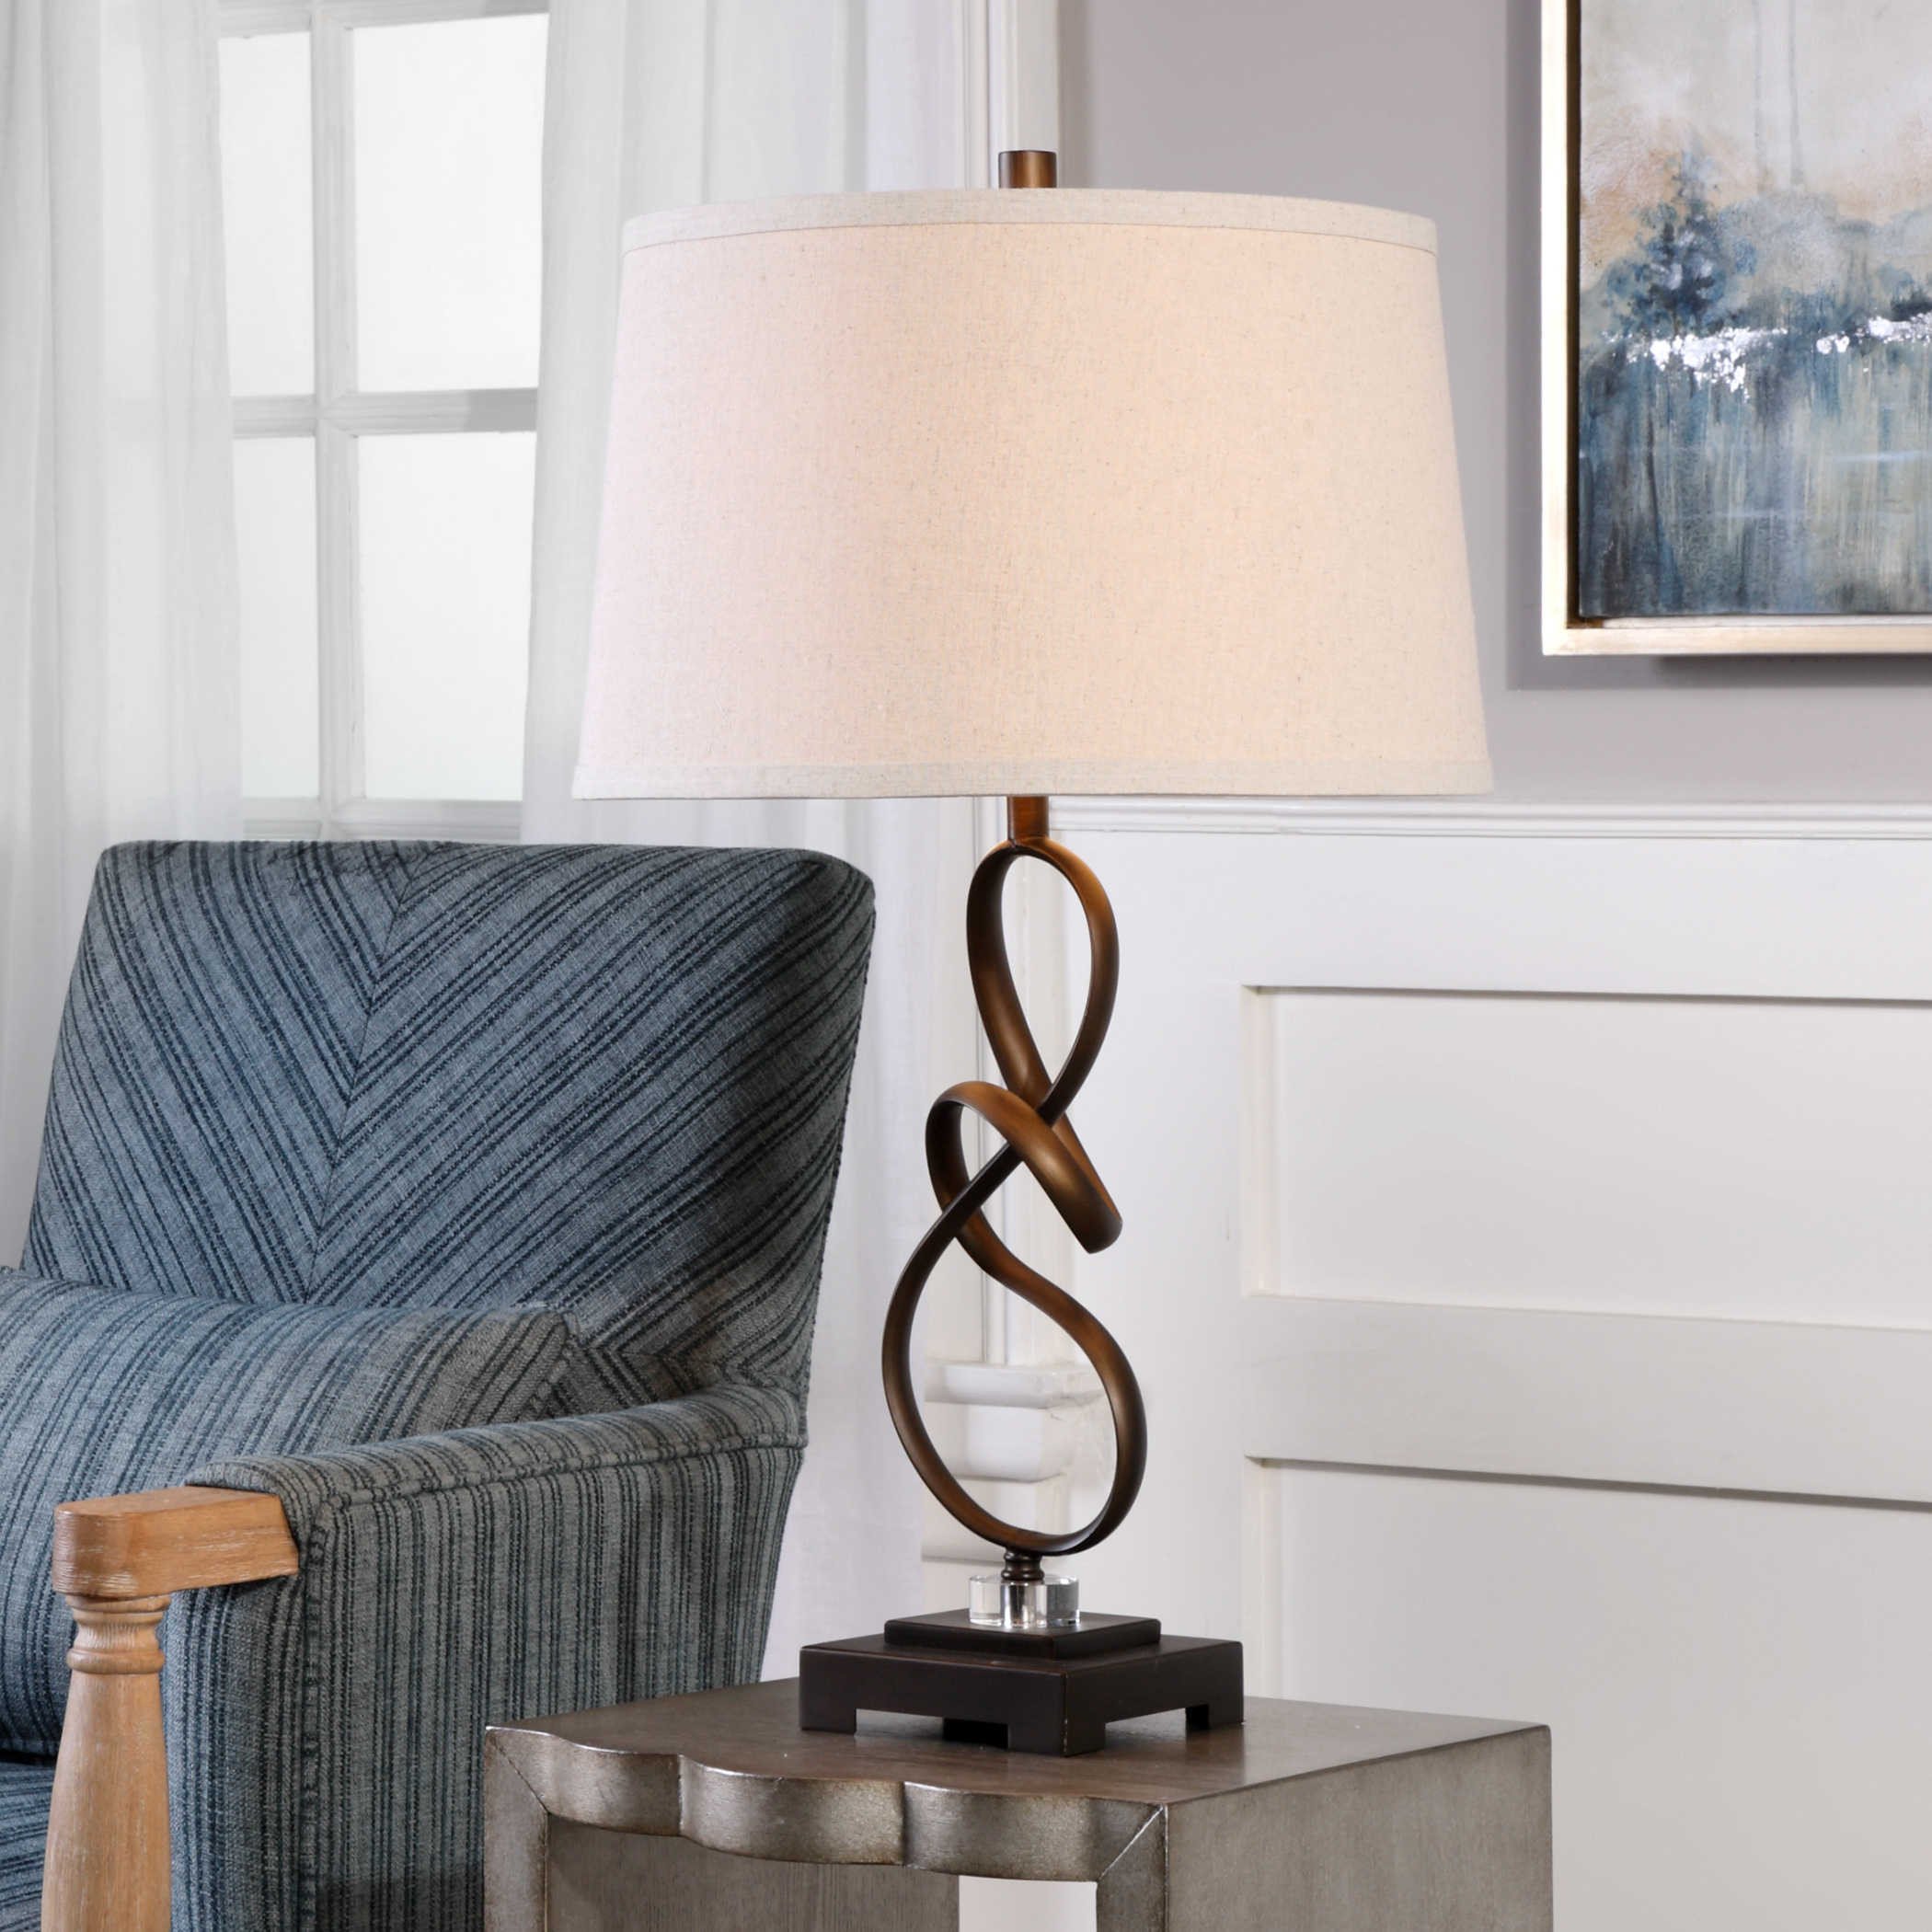 Floor Lamps for Bedroom Inspirational Tenley Table Lamp